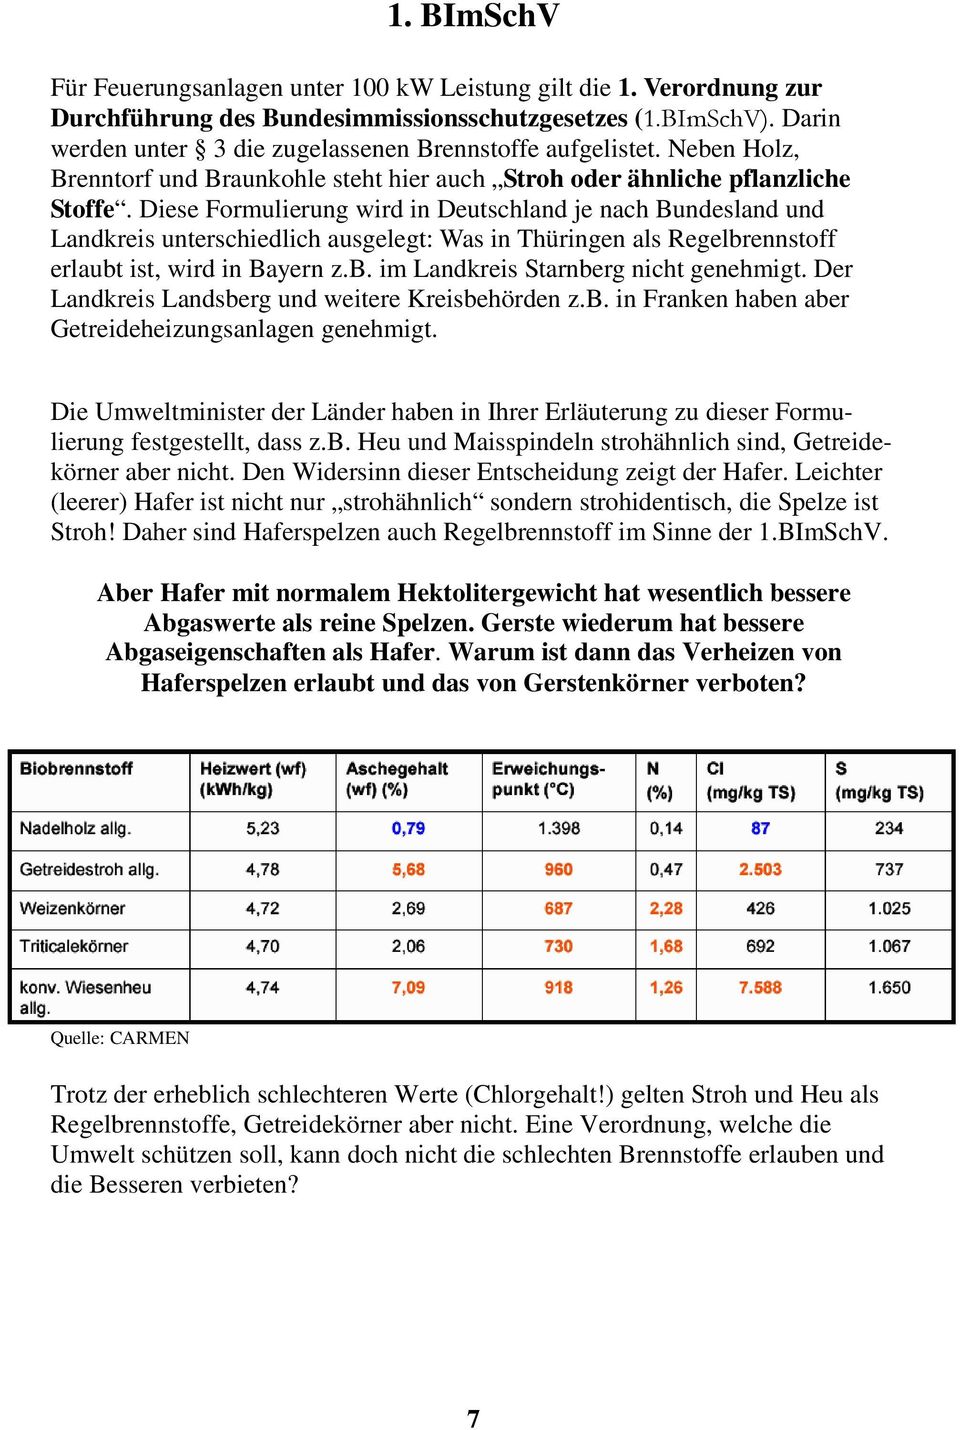 Diese Formulierung wird in Deutschland je nach Bundesland und Landkreis unterschiedlich ausgelegt: Was in Thüringen als Regelbrennstoff erlaubt ist, wird in Bayern z.b. im Landkreis Starnberg nicht genehmigt.